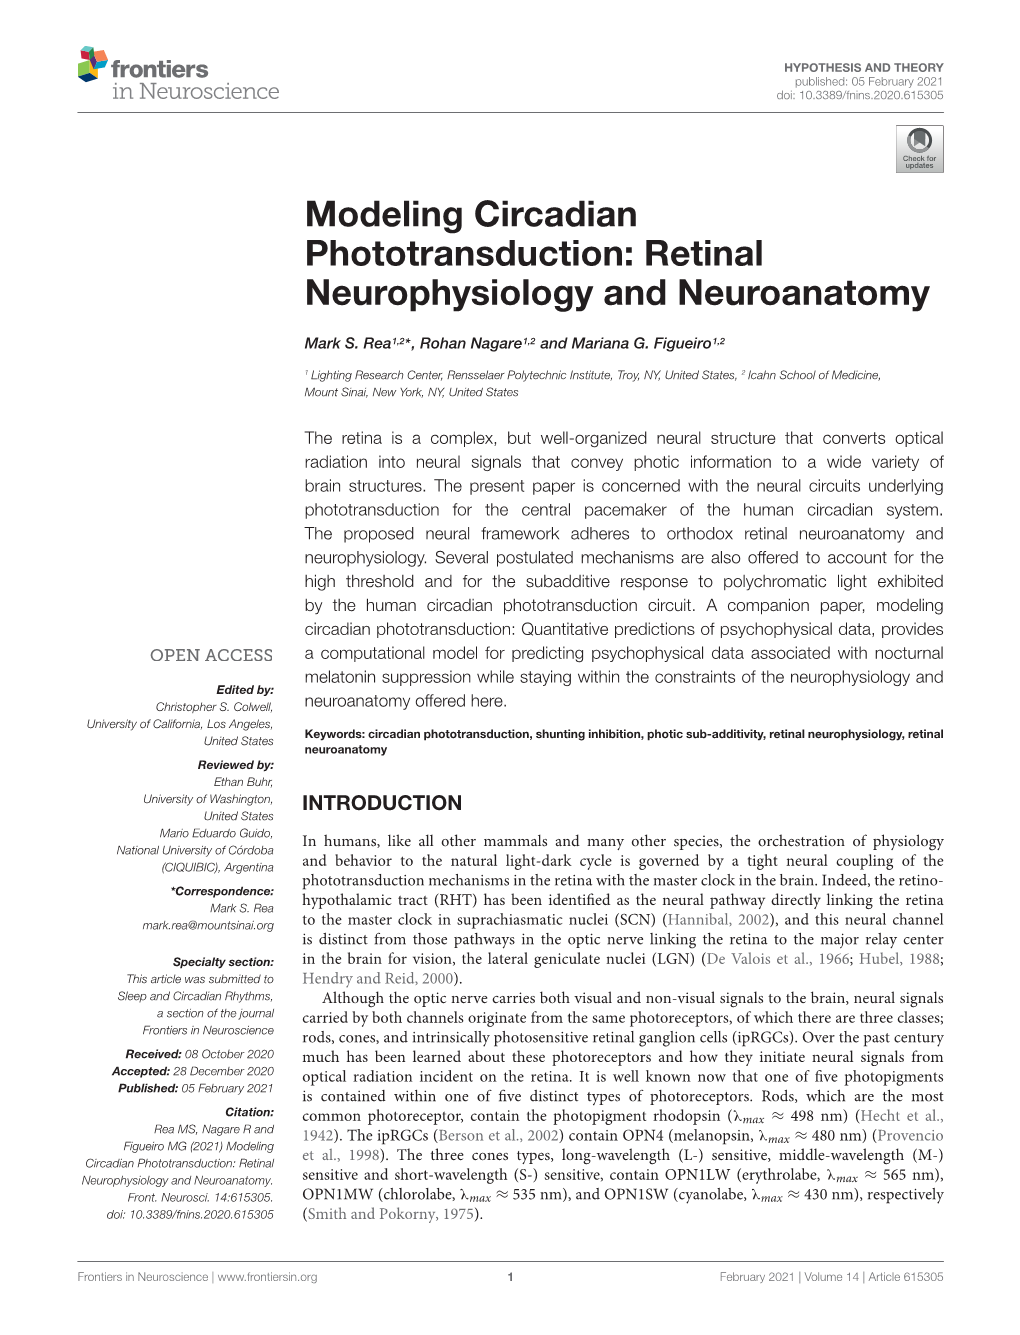 Modeling Circadian Phototransduction: Retinal Neurophysiology and Neuroanatomy